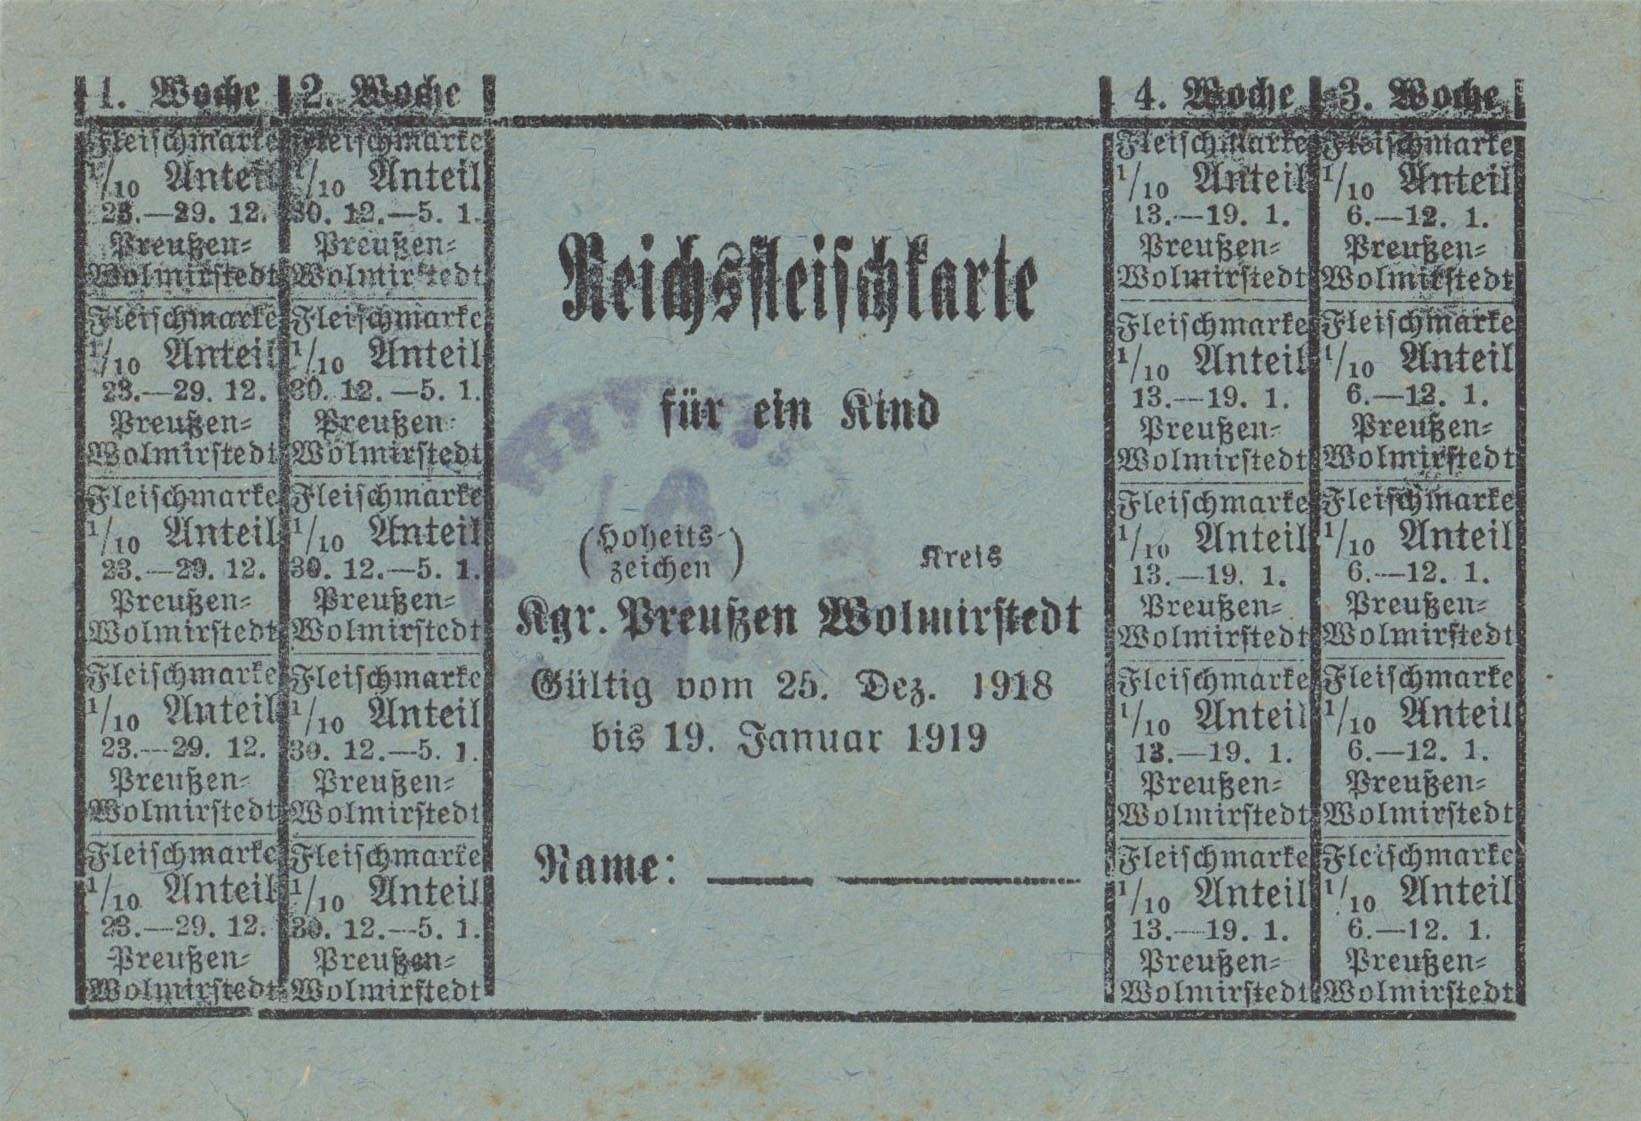 Reichsfleischkarte für ein Kind (Dezember 1918 - Januar 1919) (Museum Wolmirstedt RR-F)